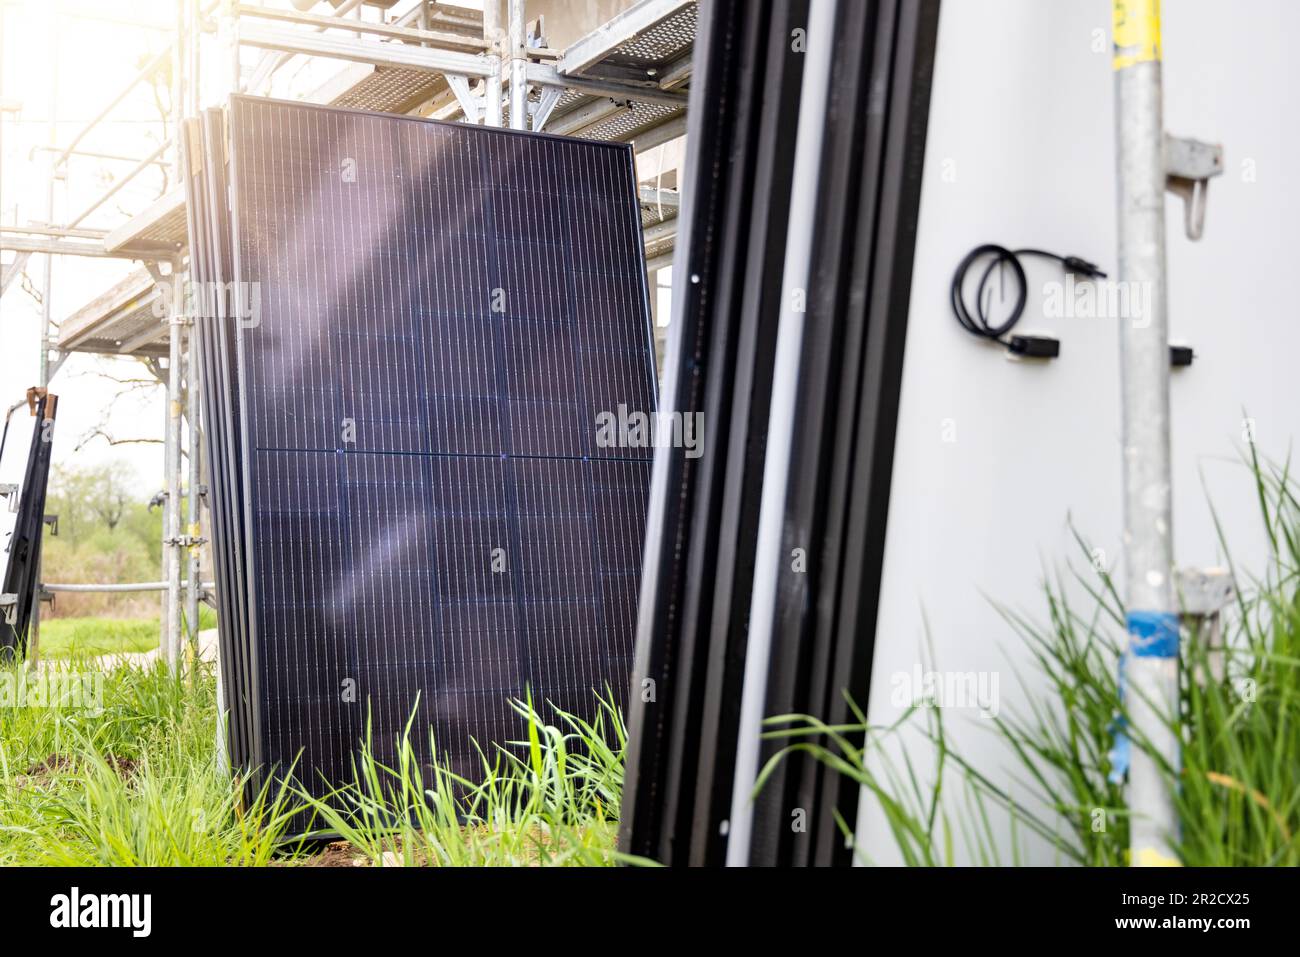 Vor der Installation auf dem Boden platzierte Solarmodule Stockfoto